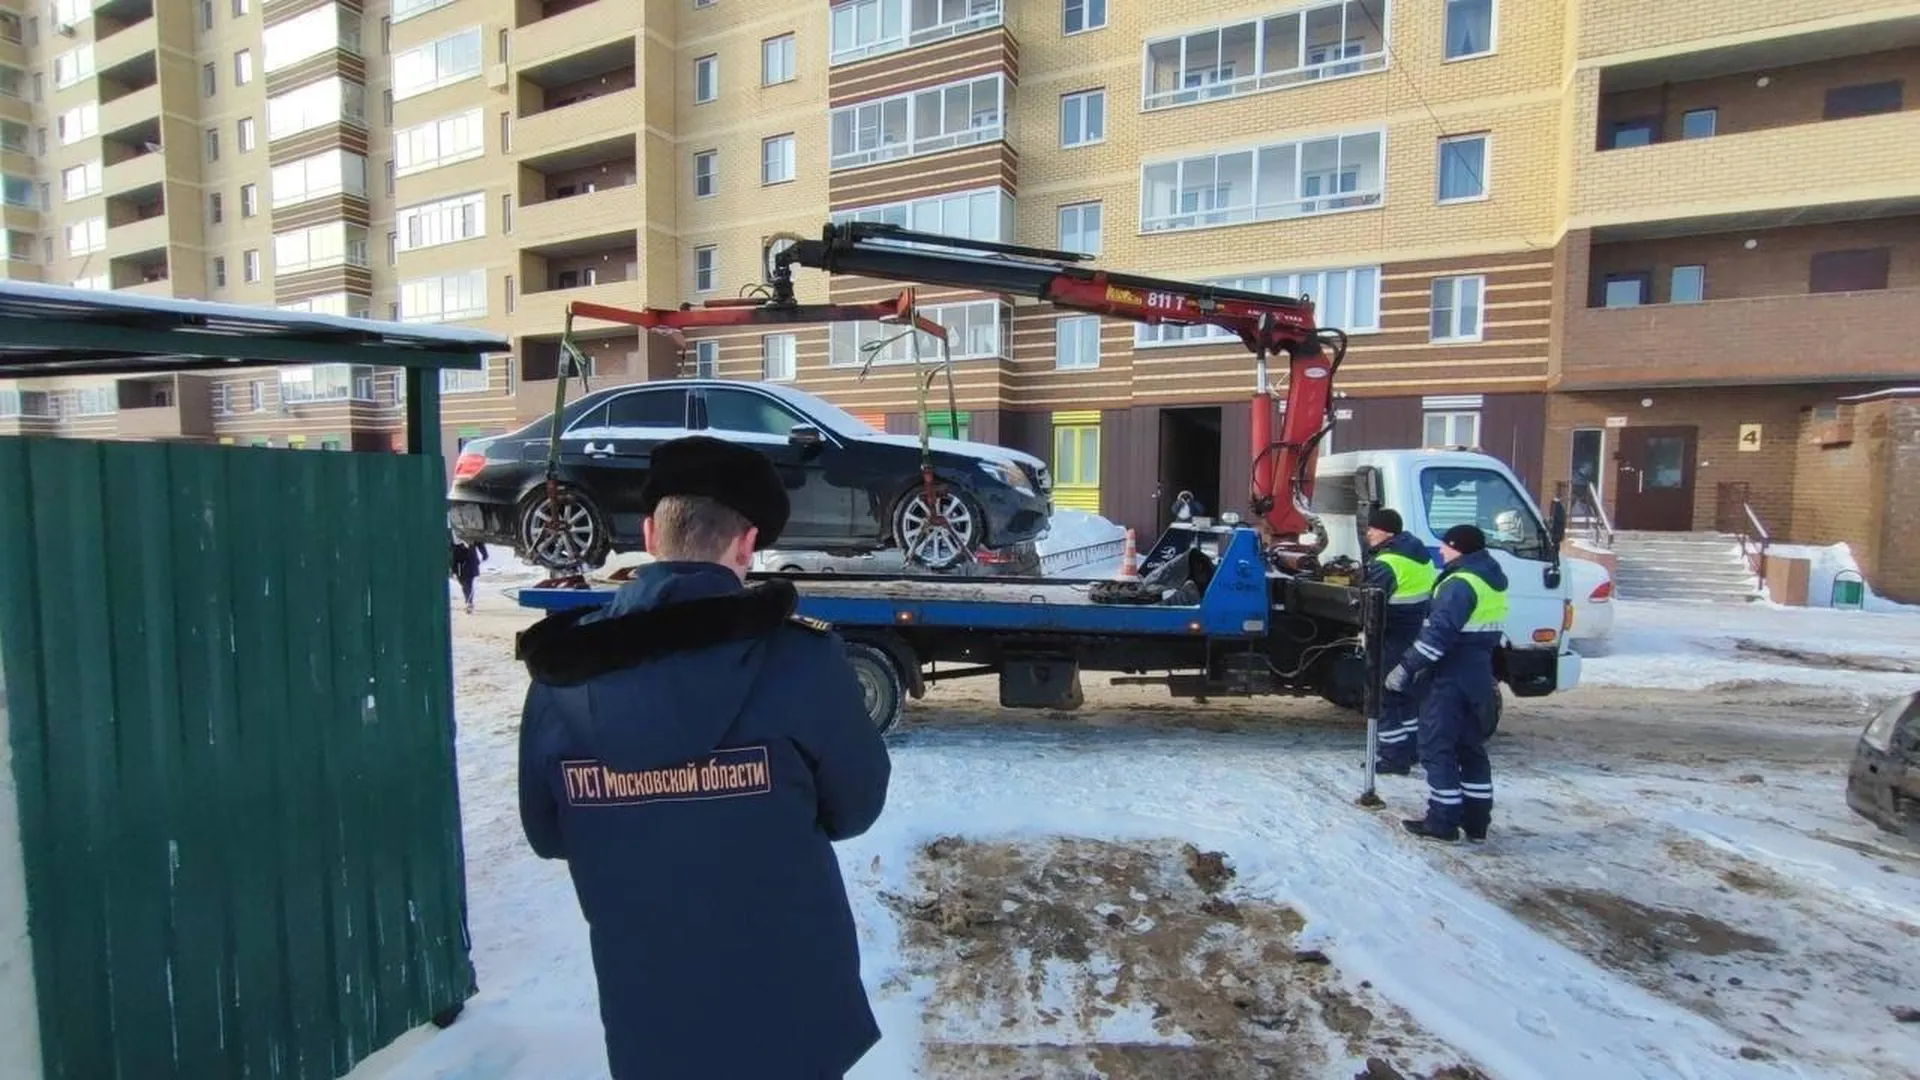 264 собственника убрали машины для обеспечения проезда мусоровозу в Подмосковье